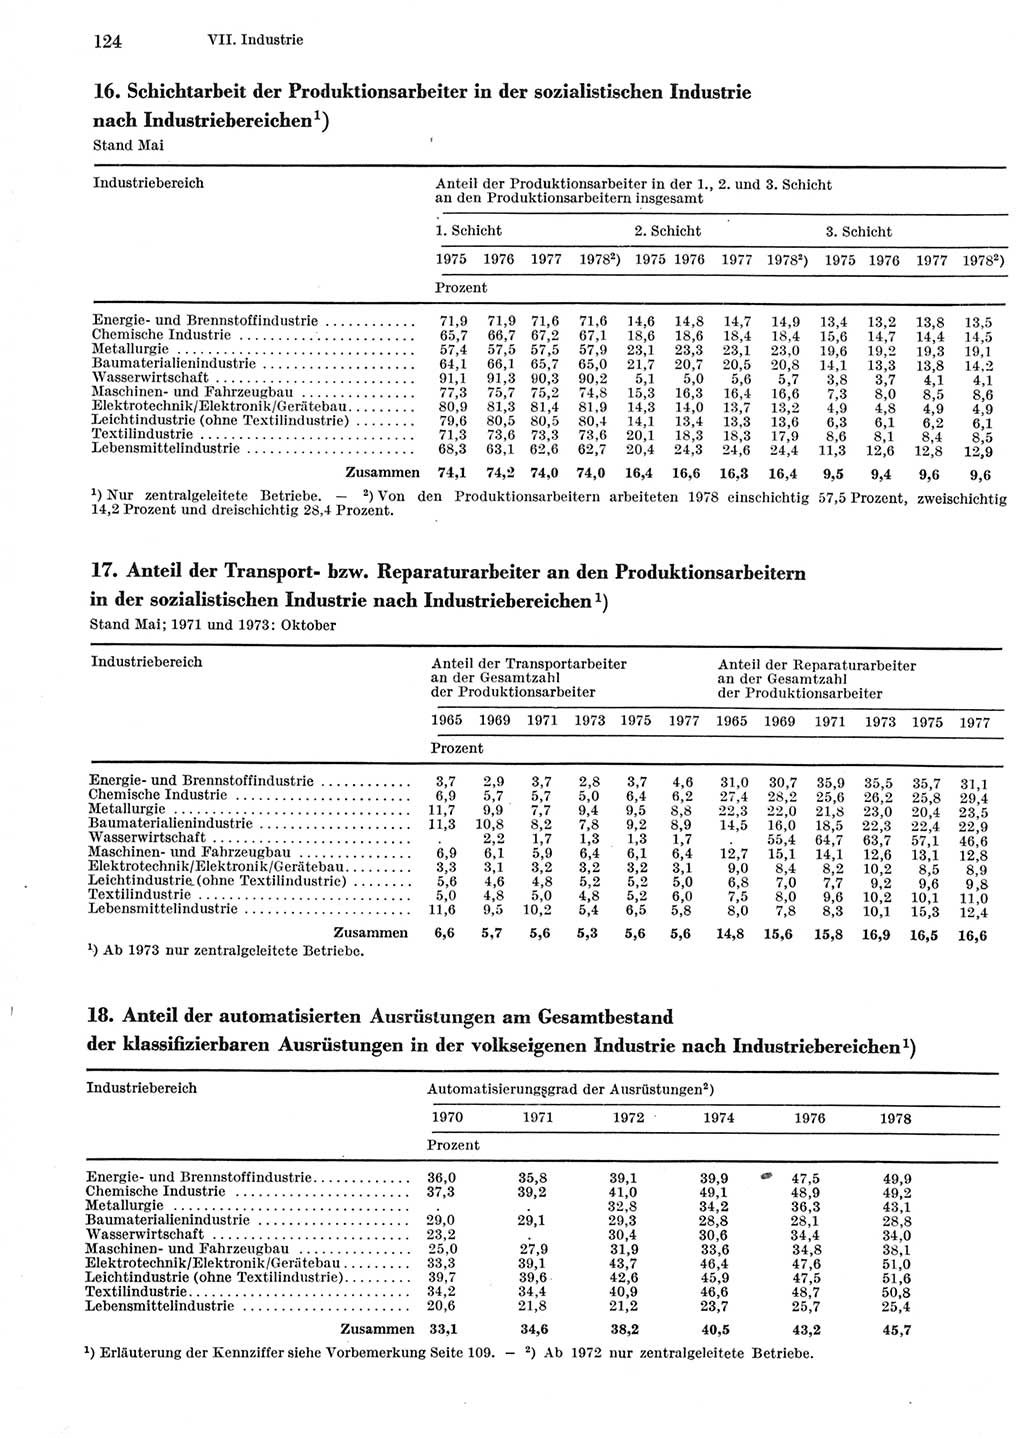 Statistisches Jahrbuch der Deutschen Demokratischen Republik (DDR) 1979, Seite 124 (Stat. Jb. DDR 1979, S. 124)